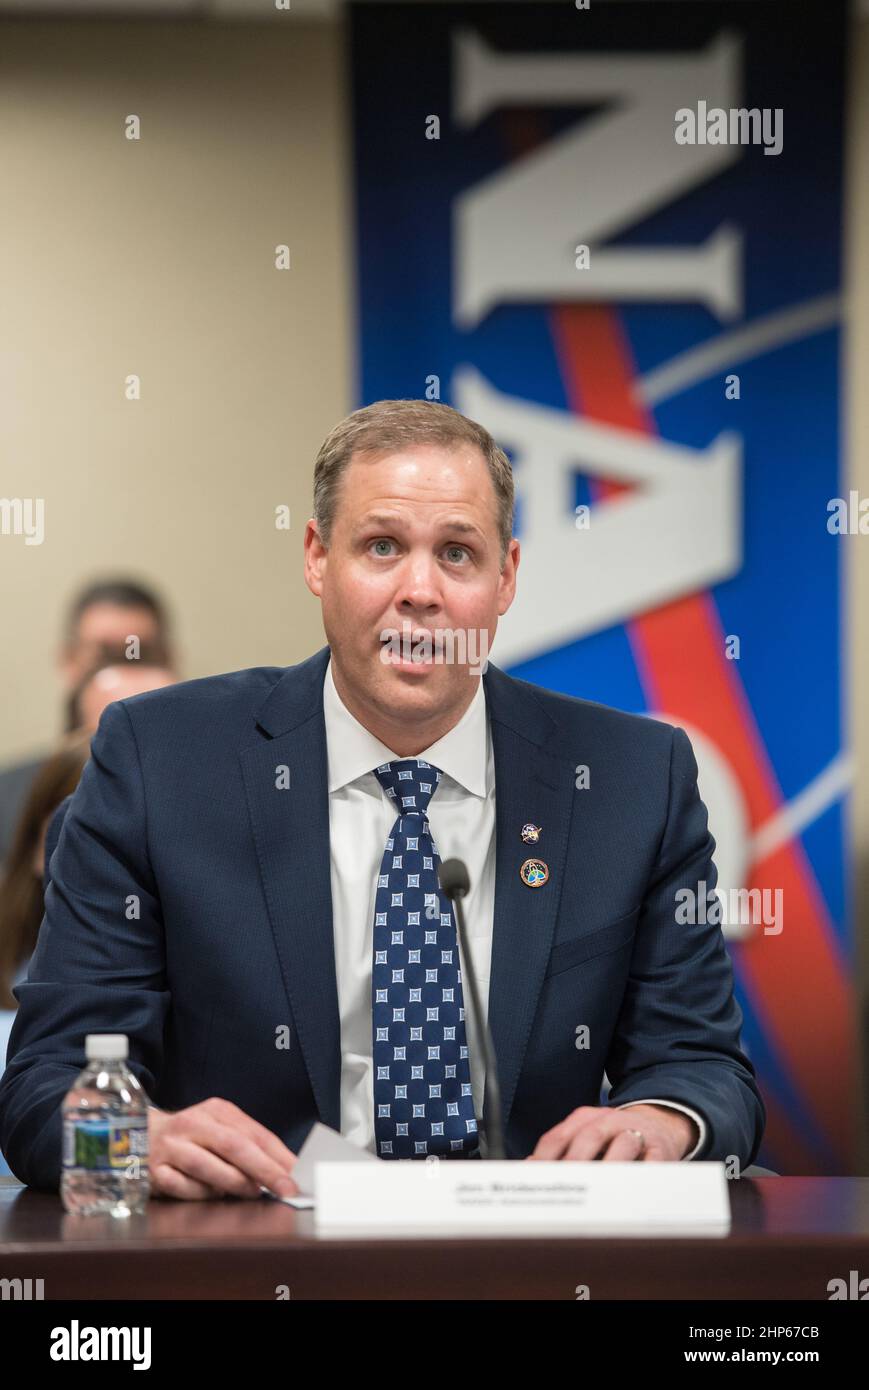 Jim Bridenstine, amministratore della NASA, parla con la leadership della NASA in videoconferenza, lunedì 23 aprile 2018 presso la sede centrale della NASA a Washington. Foto Stock